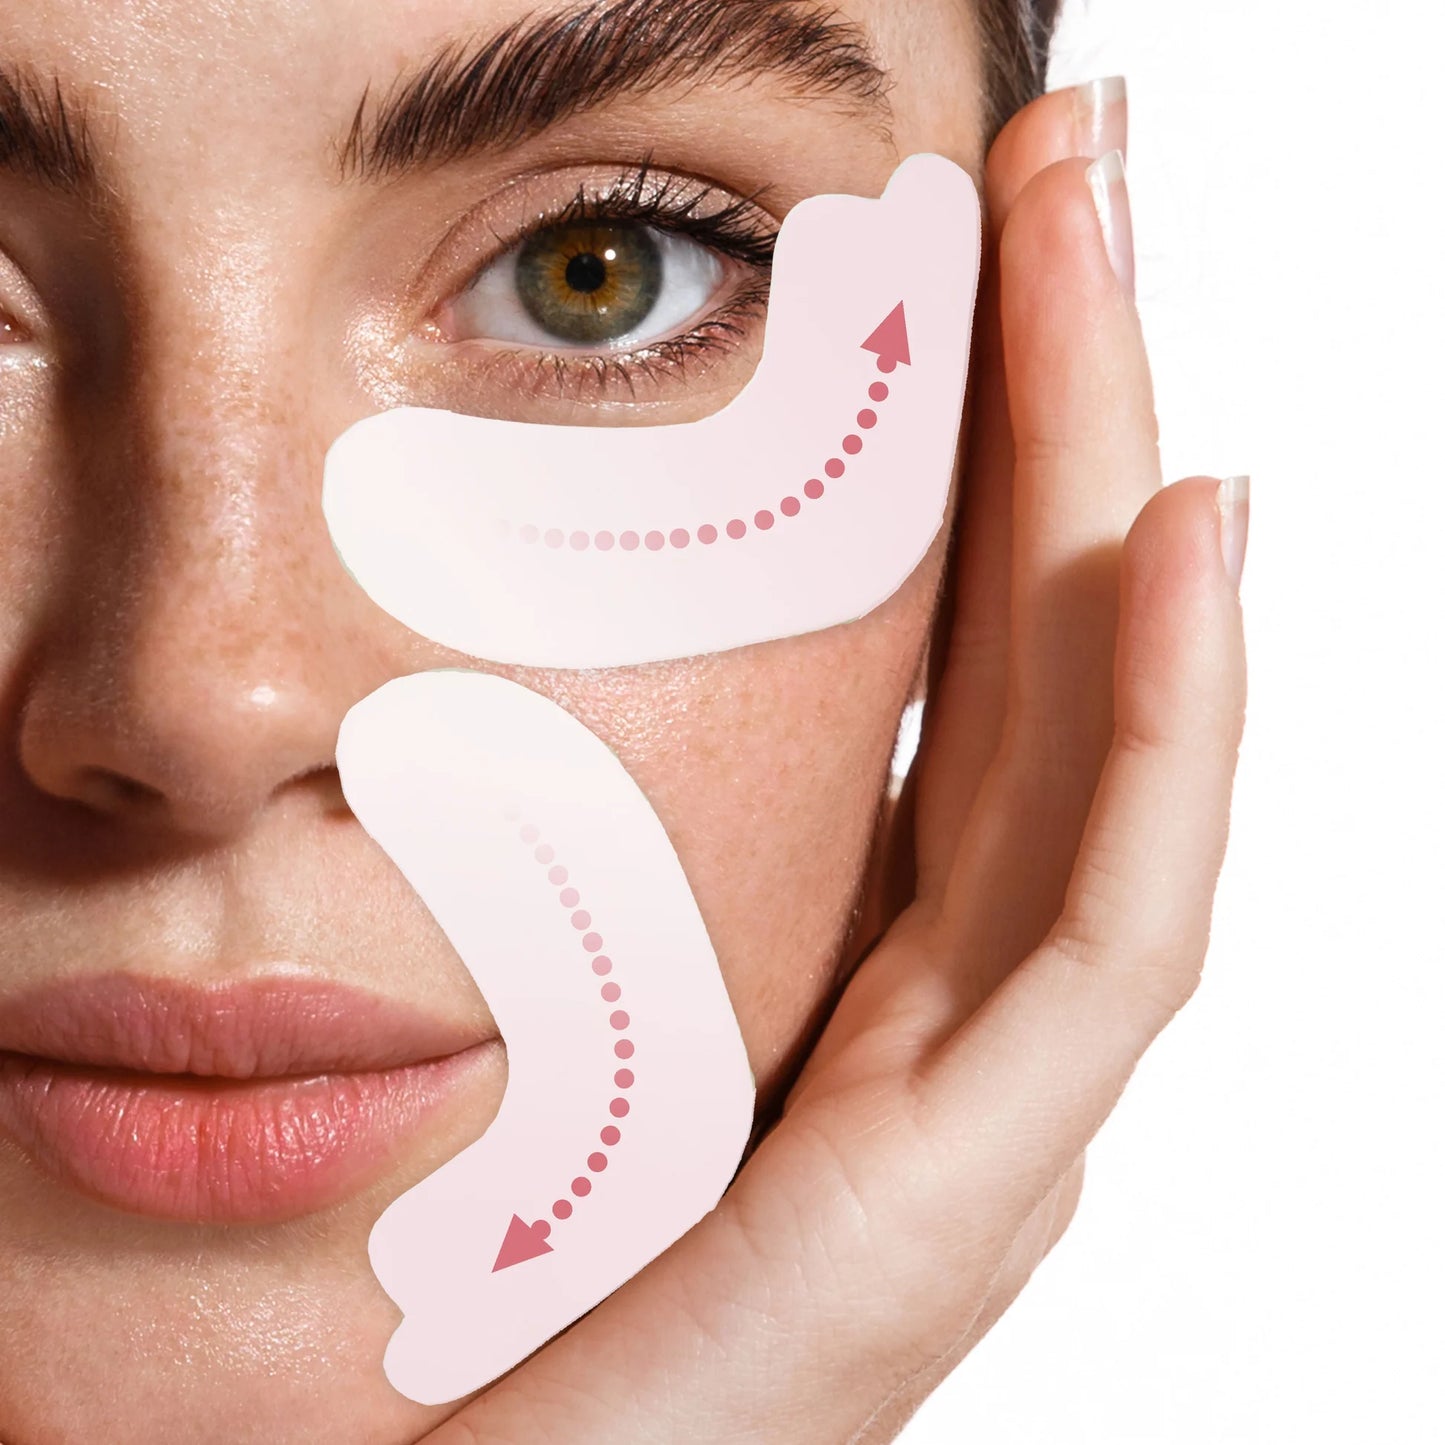 Spa Treatment iSheet HAS EXOSOME Eye Mask